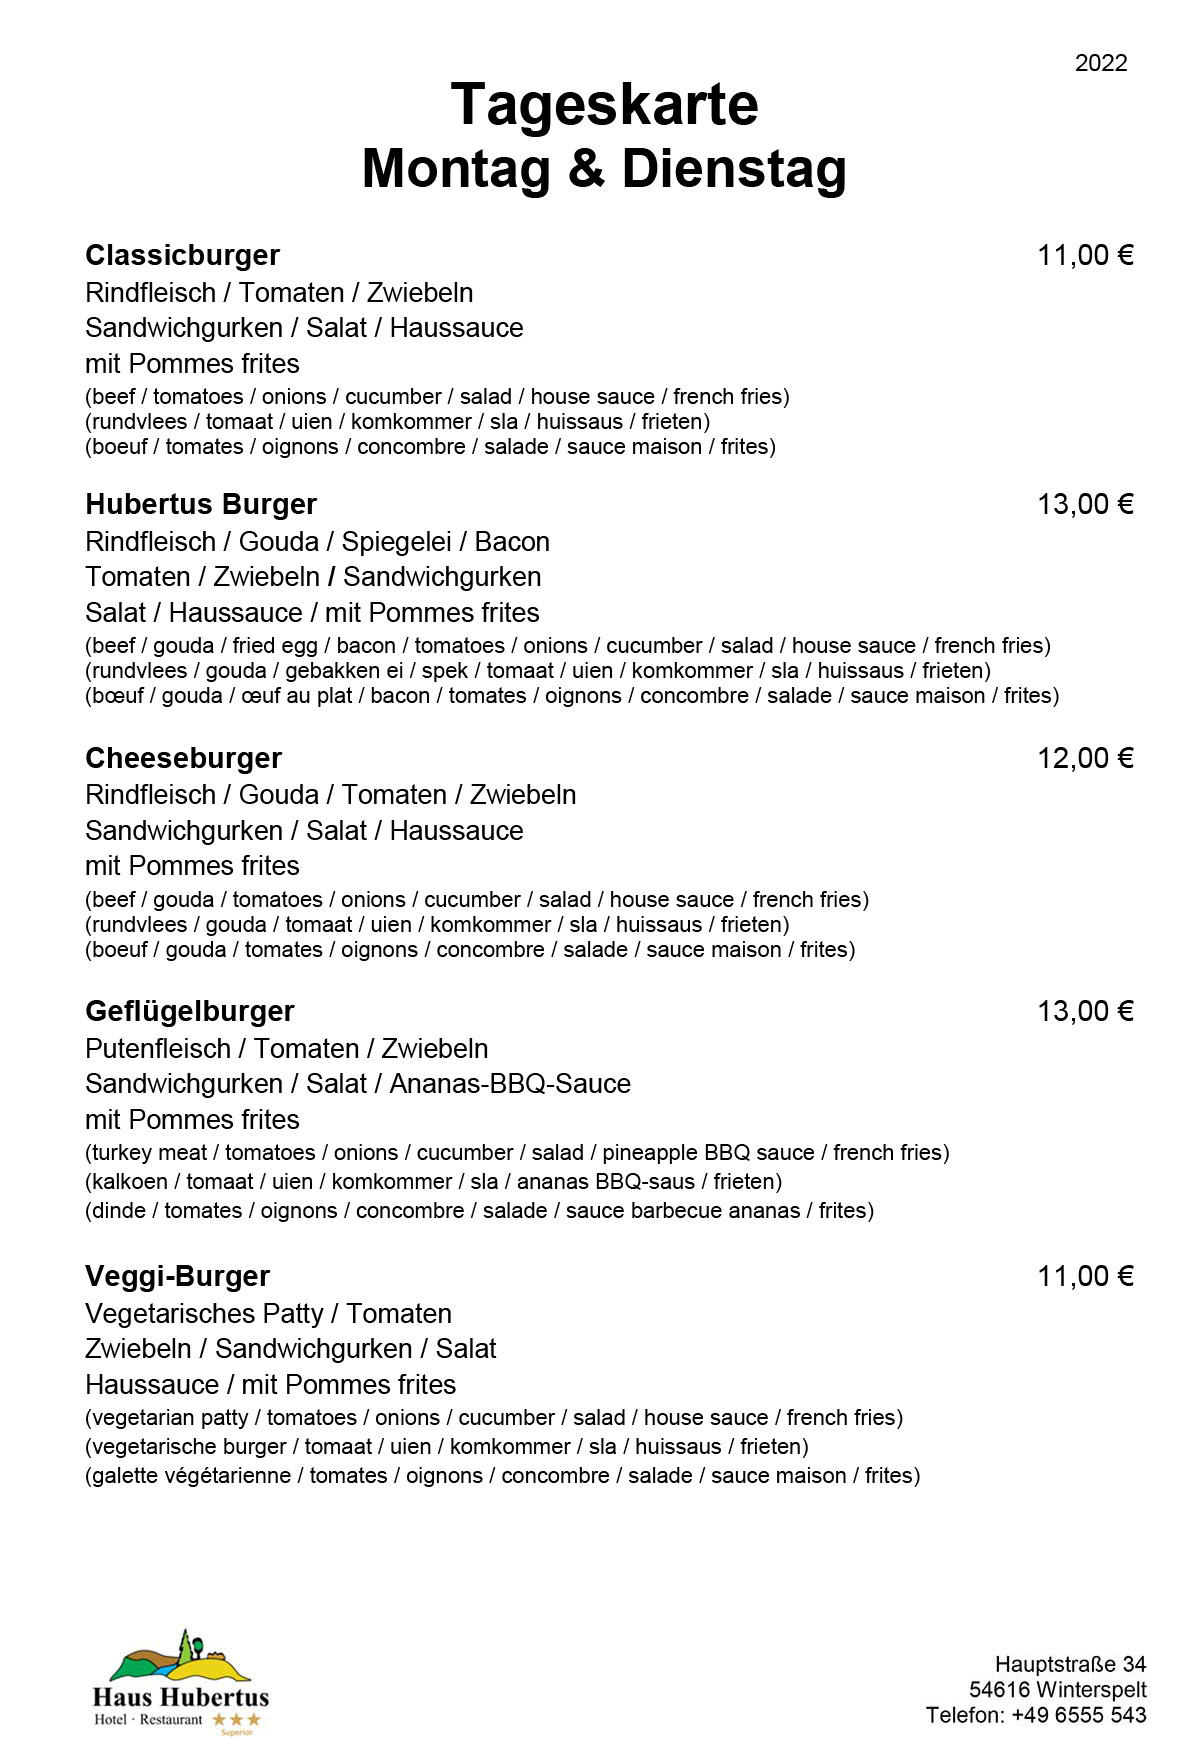 Hotel - Restaurant Haus Hubertus - Speisekarte 2022 - Tageskarte / Montag und Dienstag